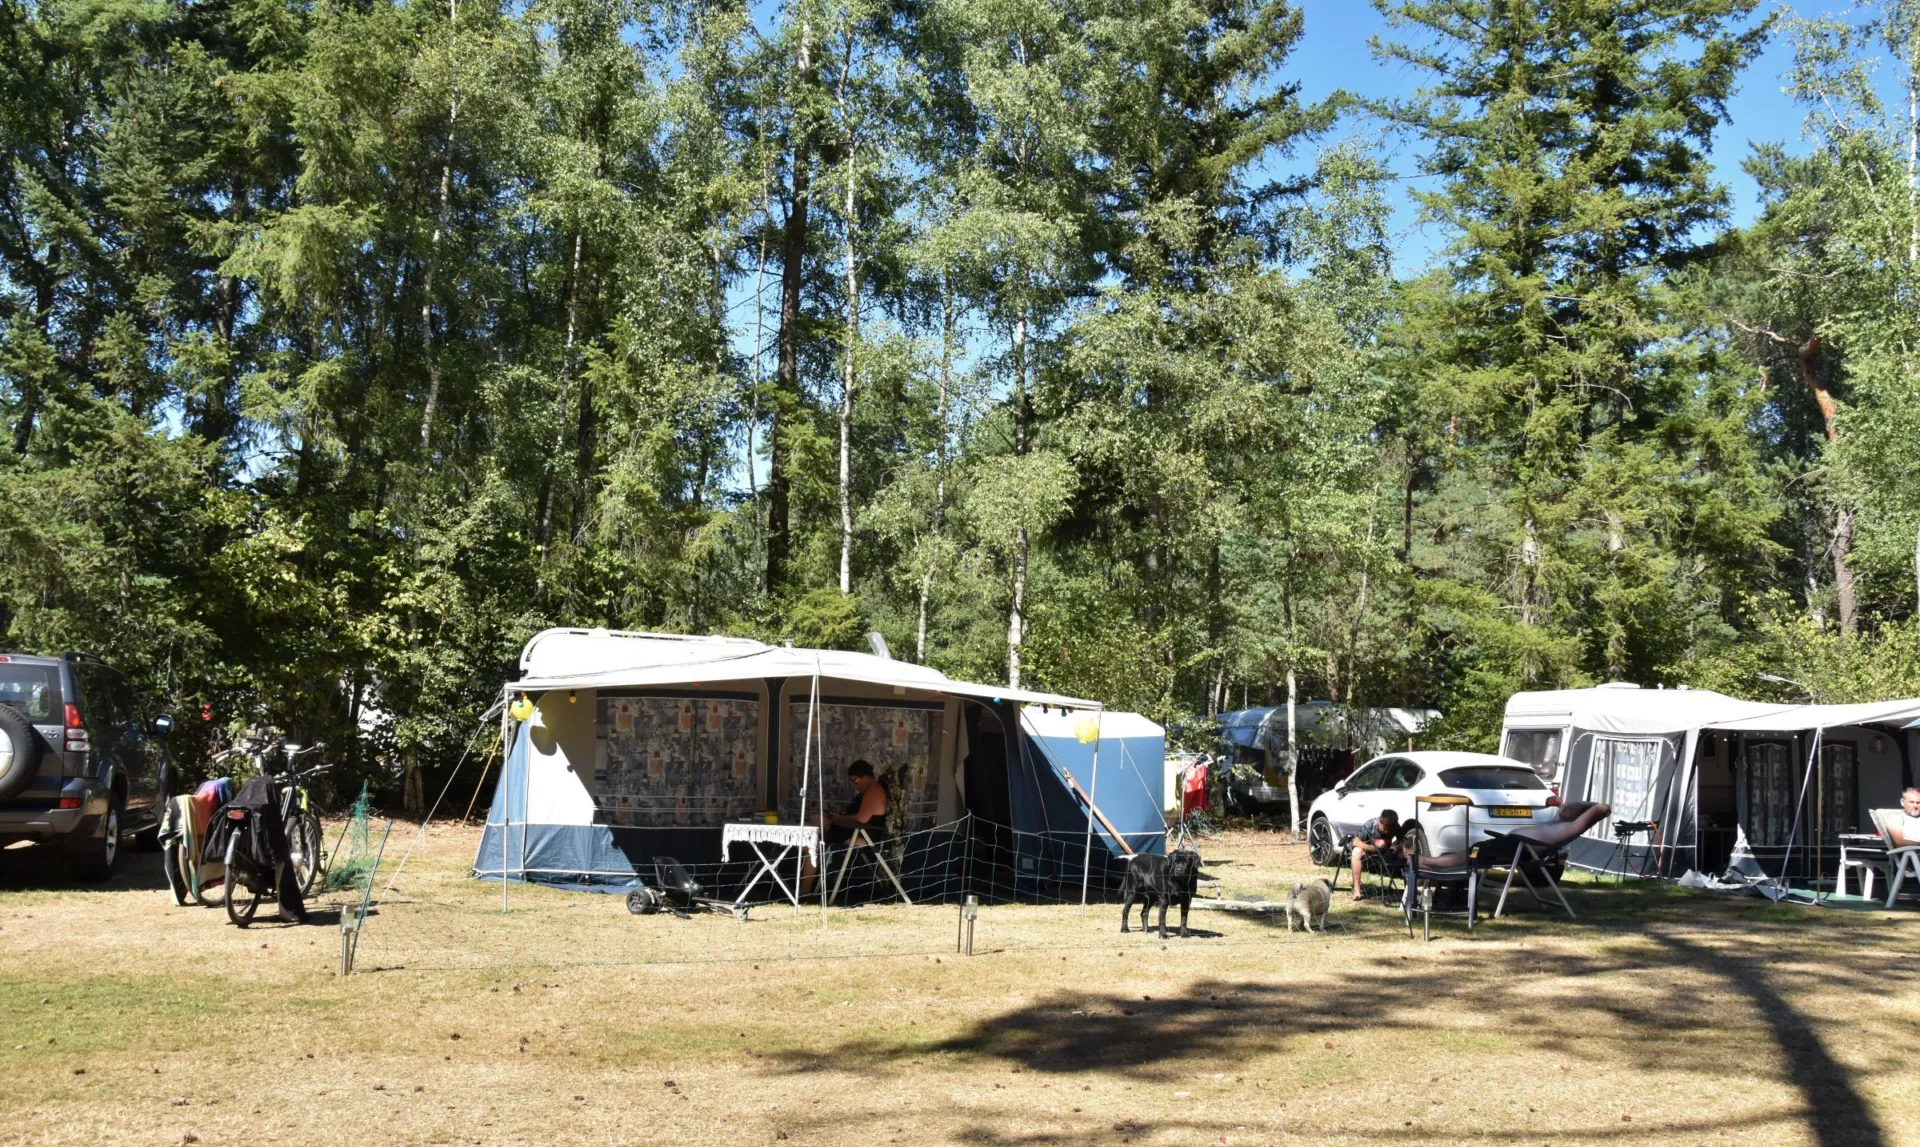 Camping met hond kampeerplaats Ommerbos 2